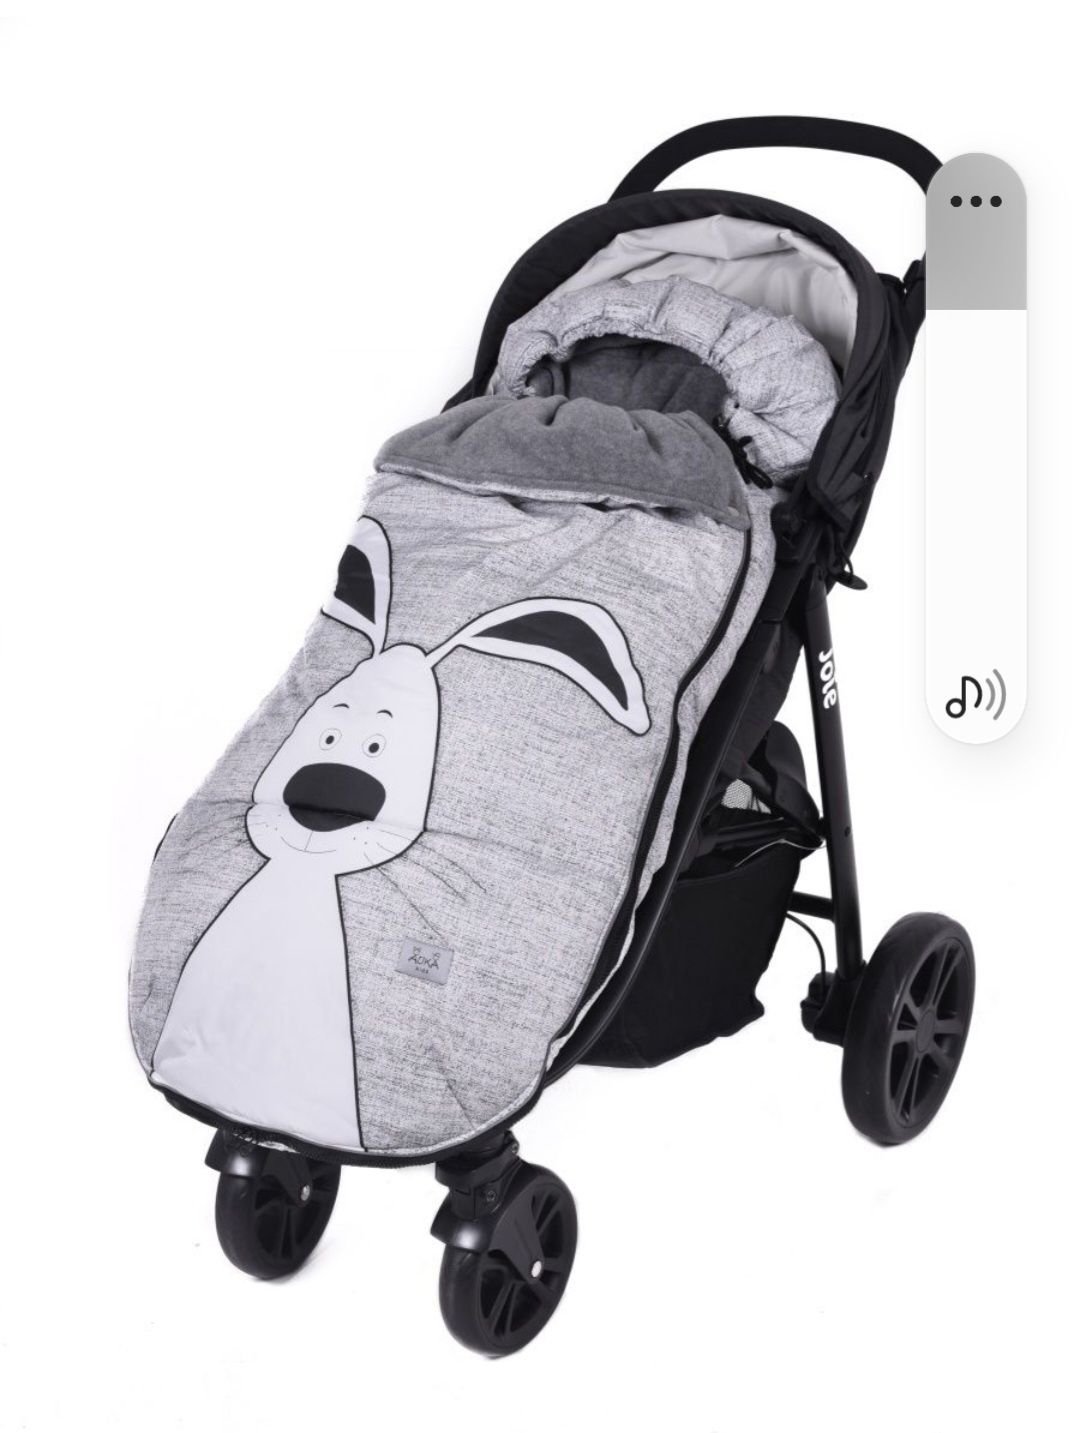 Конверт для ребёнка большой и теплый на прогулочную коляску